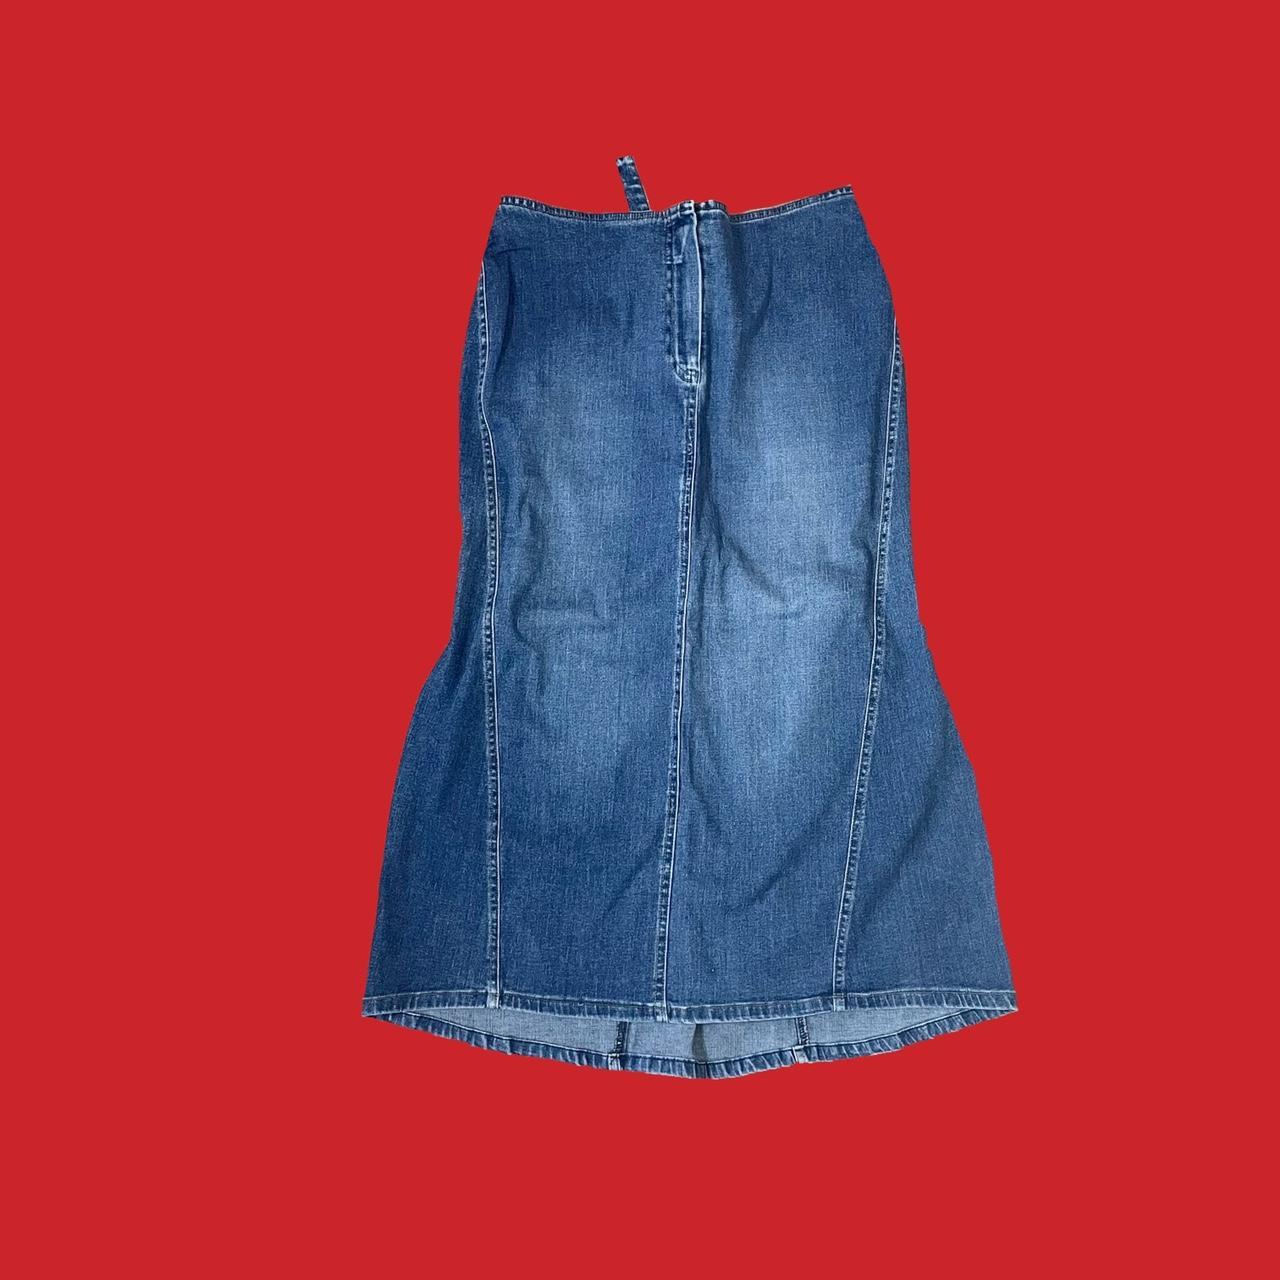 Vintage 2000s denim long skirt by Benim Cute low... - Depop